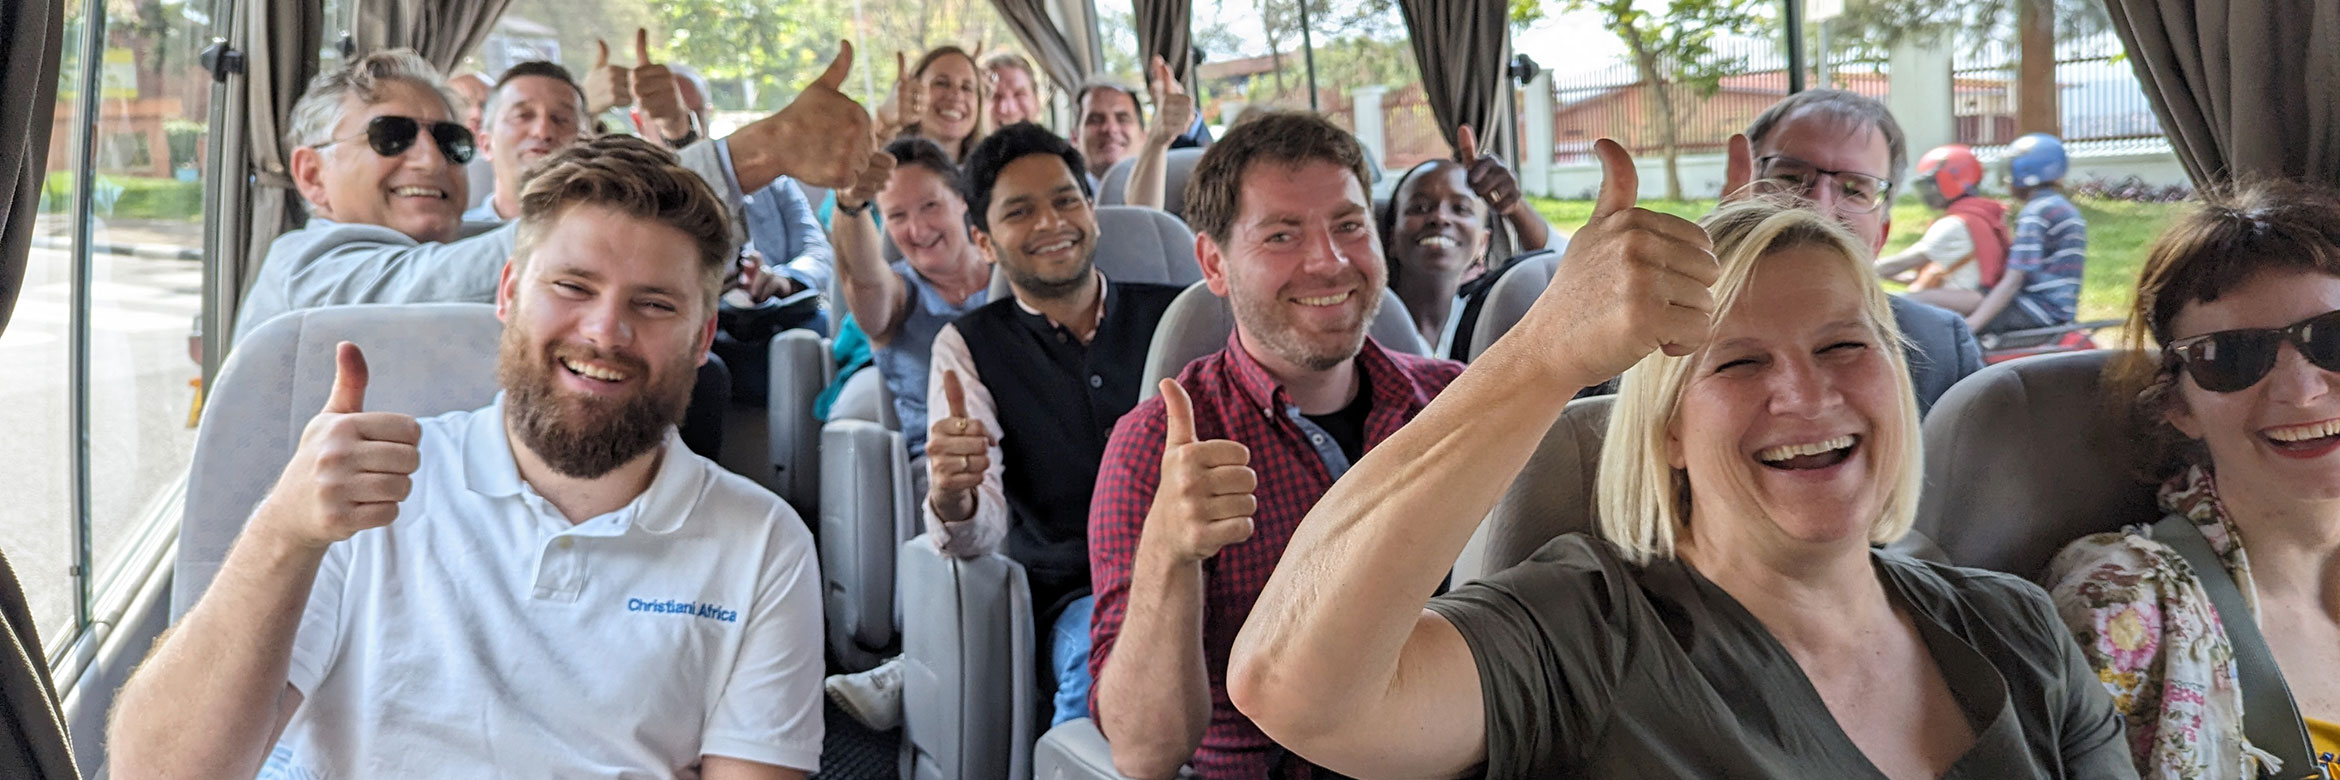 Menschen in einem Bus heben die Hände mit erhobenem Daumen